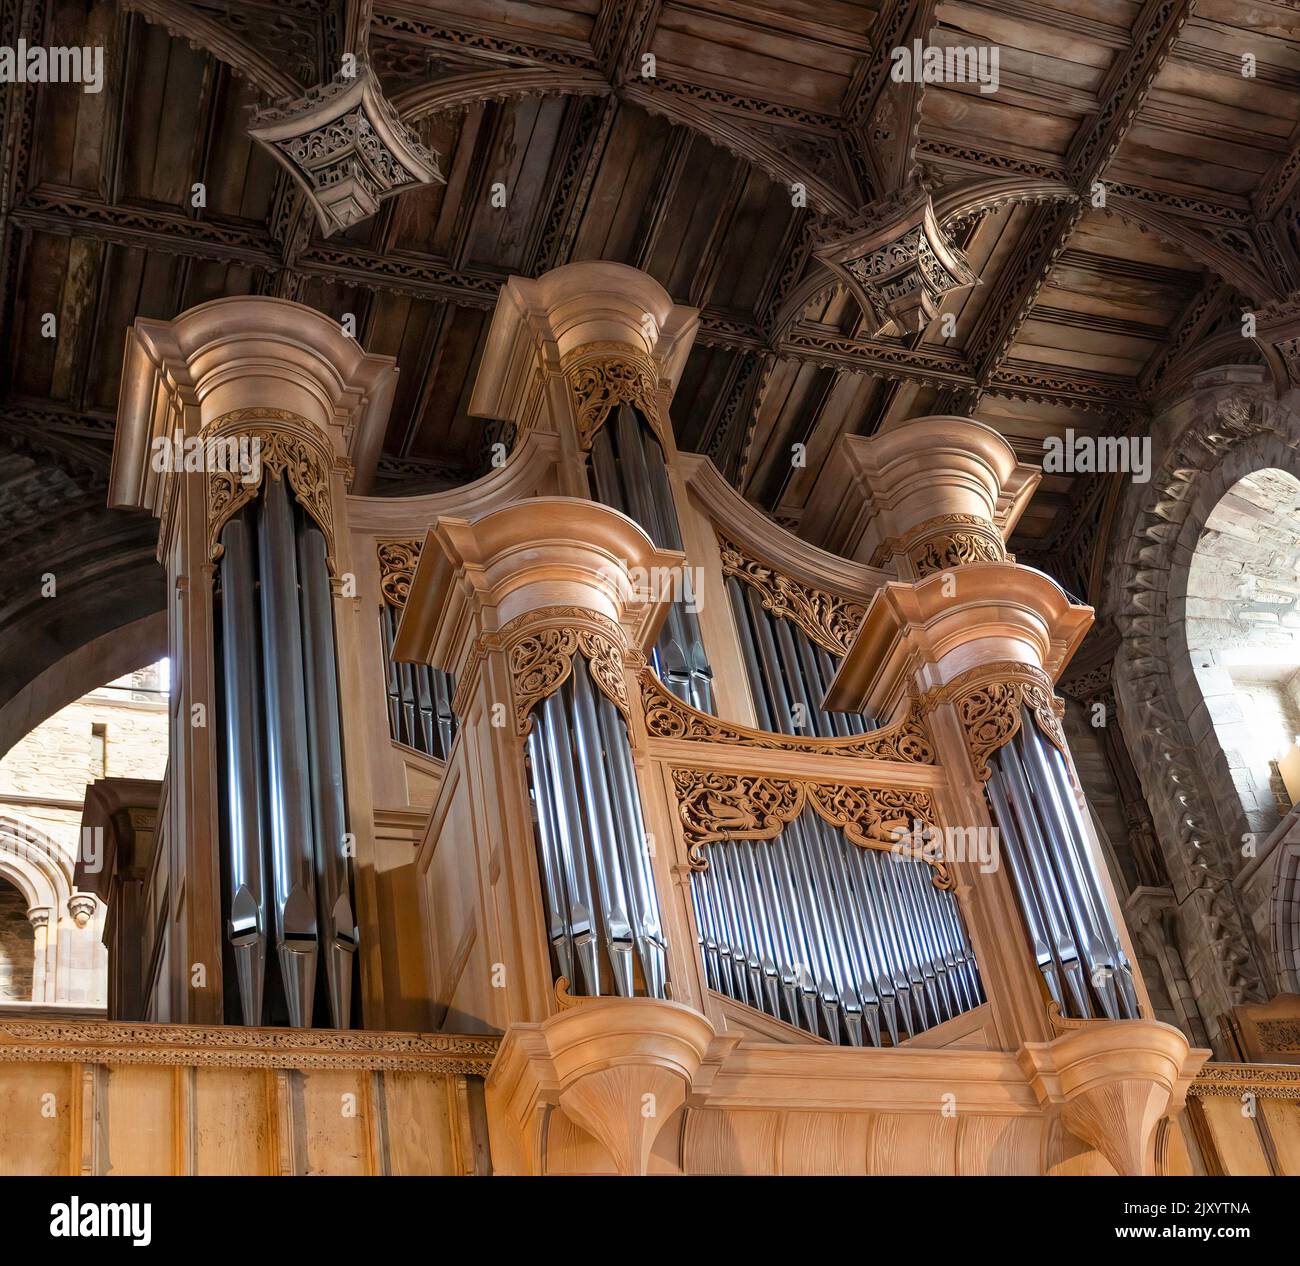 Les tuyaux d'orgue à la cathédrale St Davids, dans l'ouest du pays de Galles, au Royaume-Uni Banque D'Images